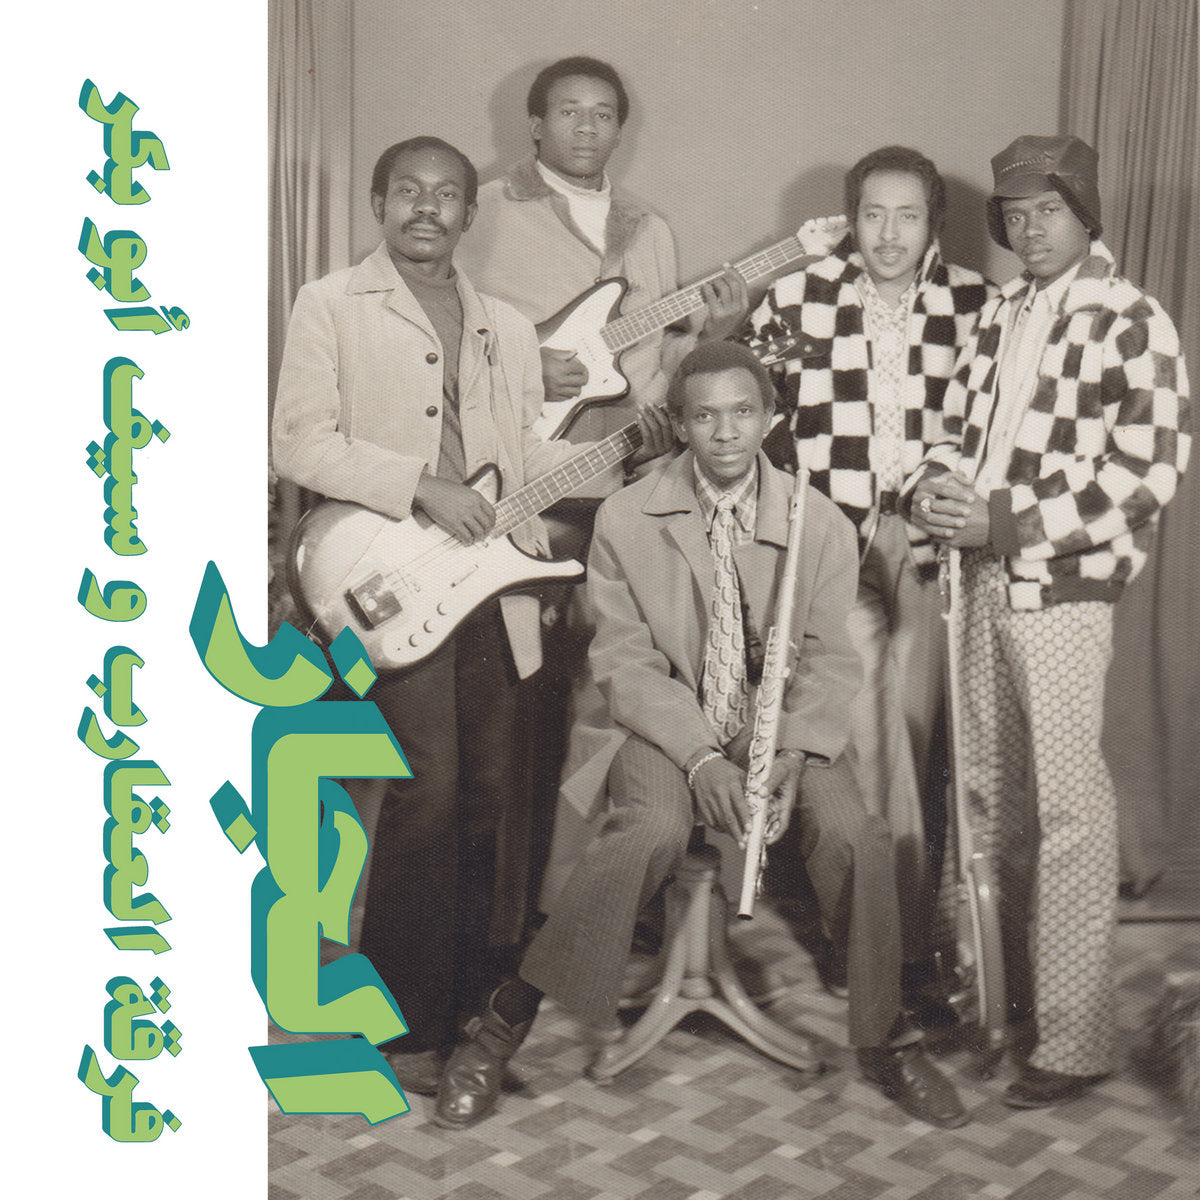 Scorpions & Saif Abu Bakr "Jazz, Jazz, Jazz"